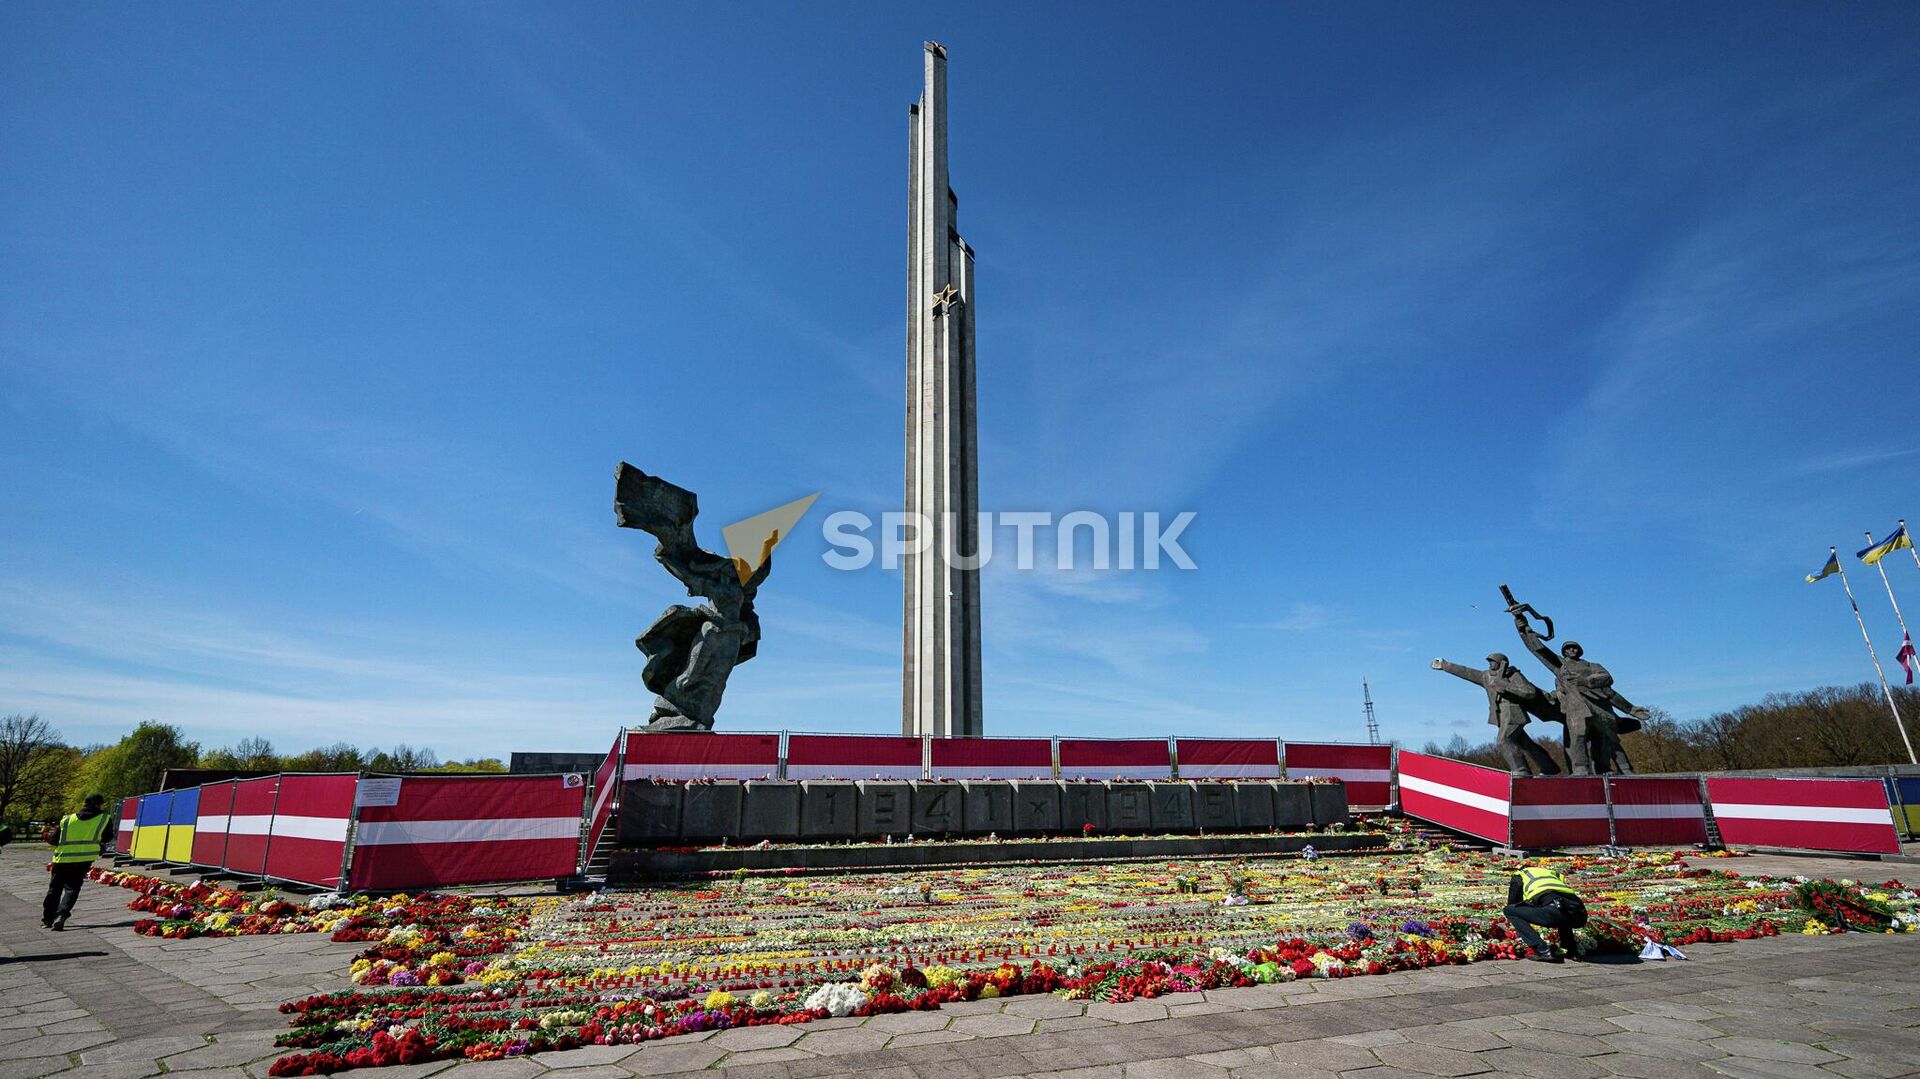 Обстановка у памятника Освободителям в Риге 9 мая 2022 года - Sputnik Латвия, 1920, 03.08.2022